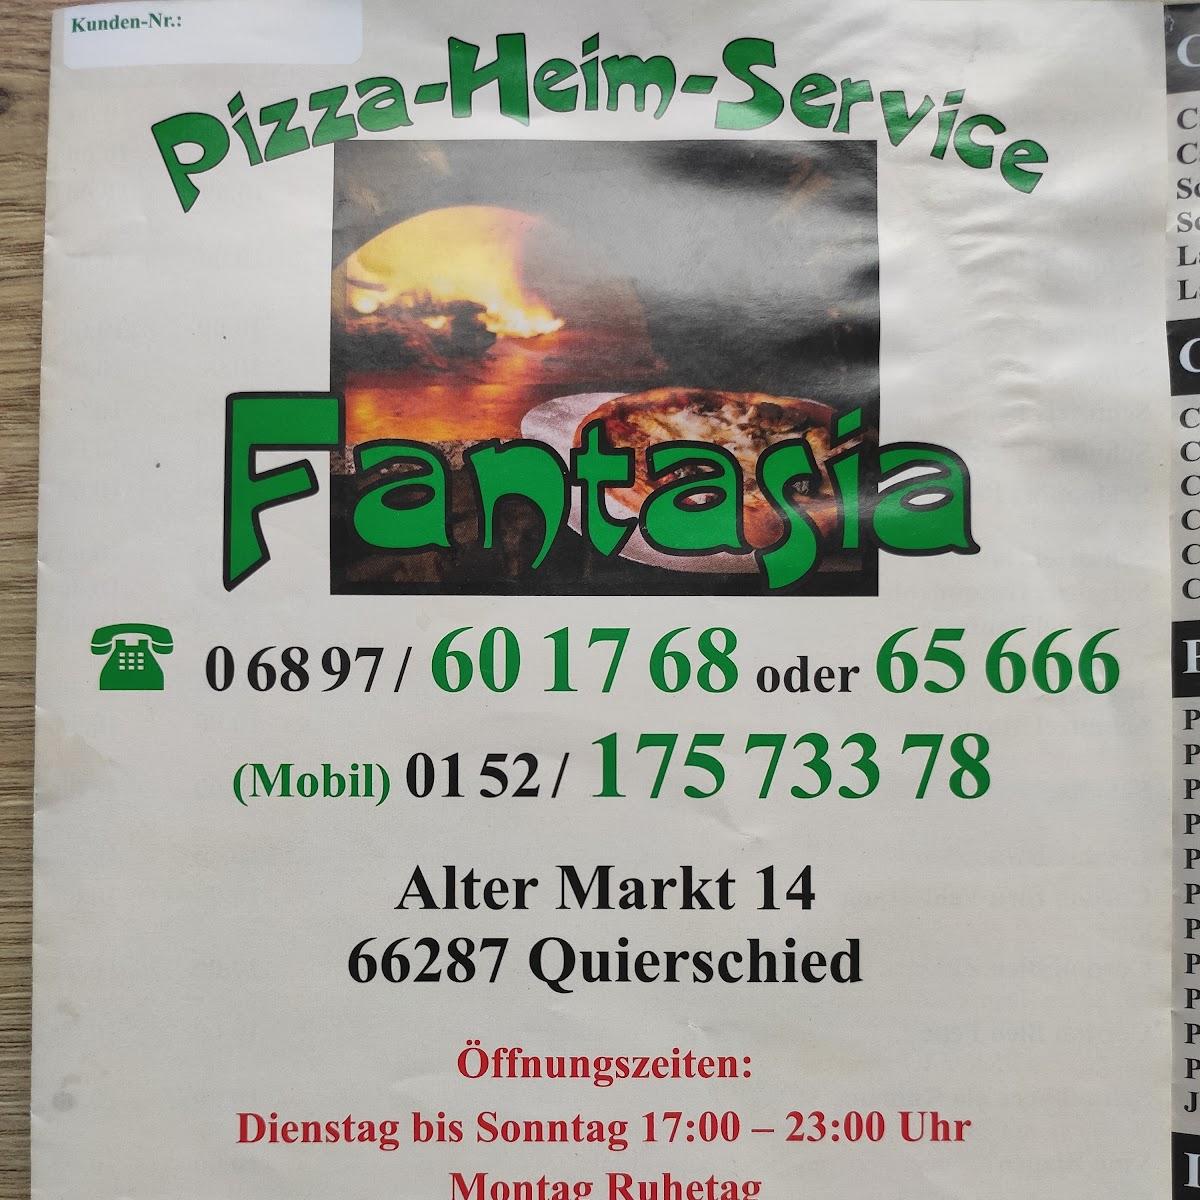 Restaurant "Pizza-Heim-Service Fantasia" in Quierschied